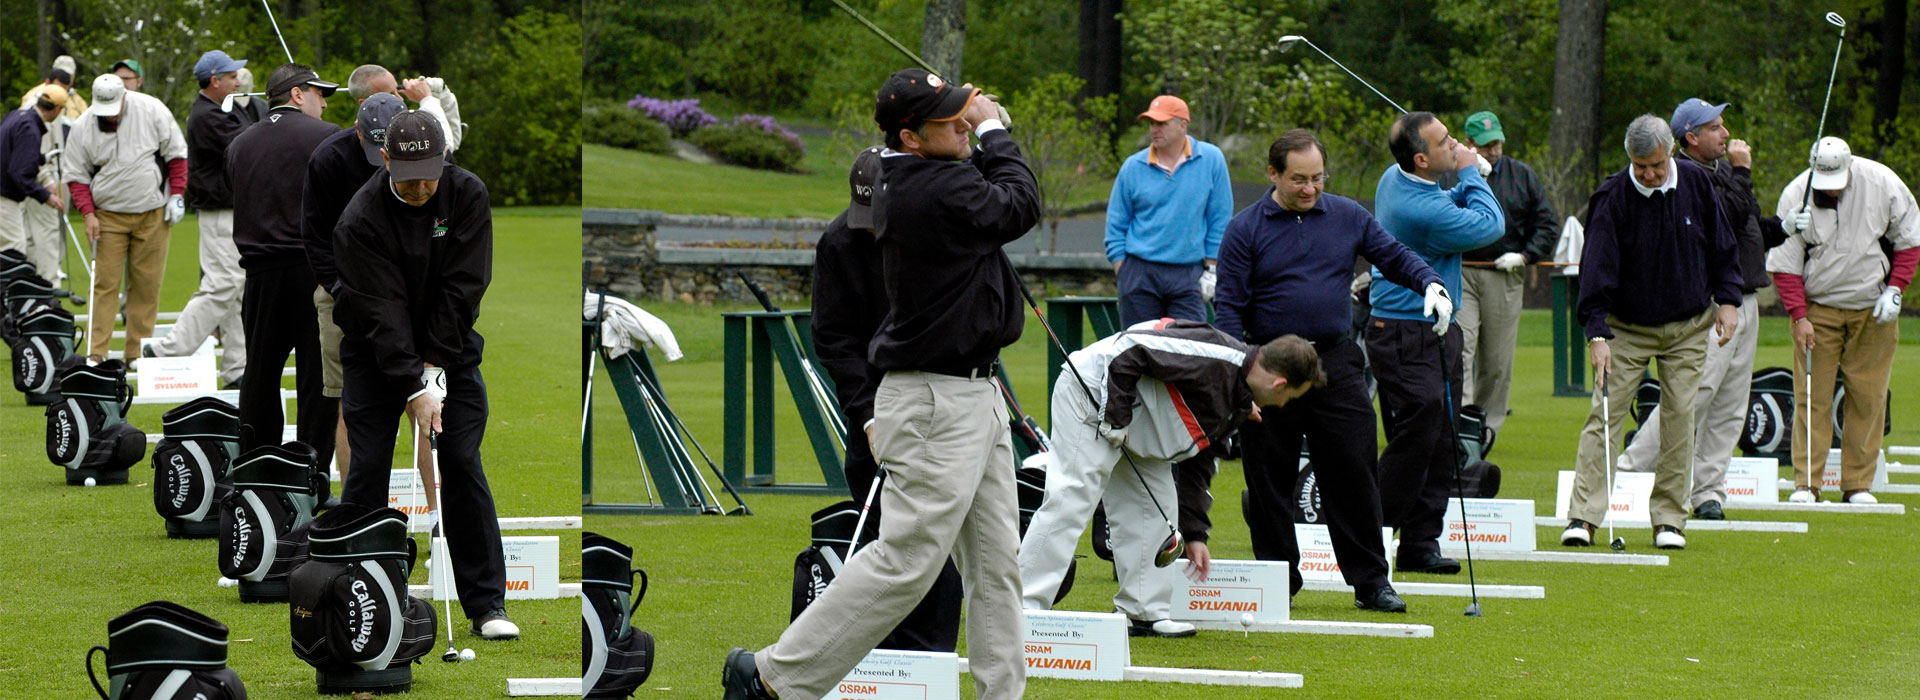 Golf Tournament Participants